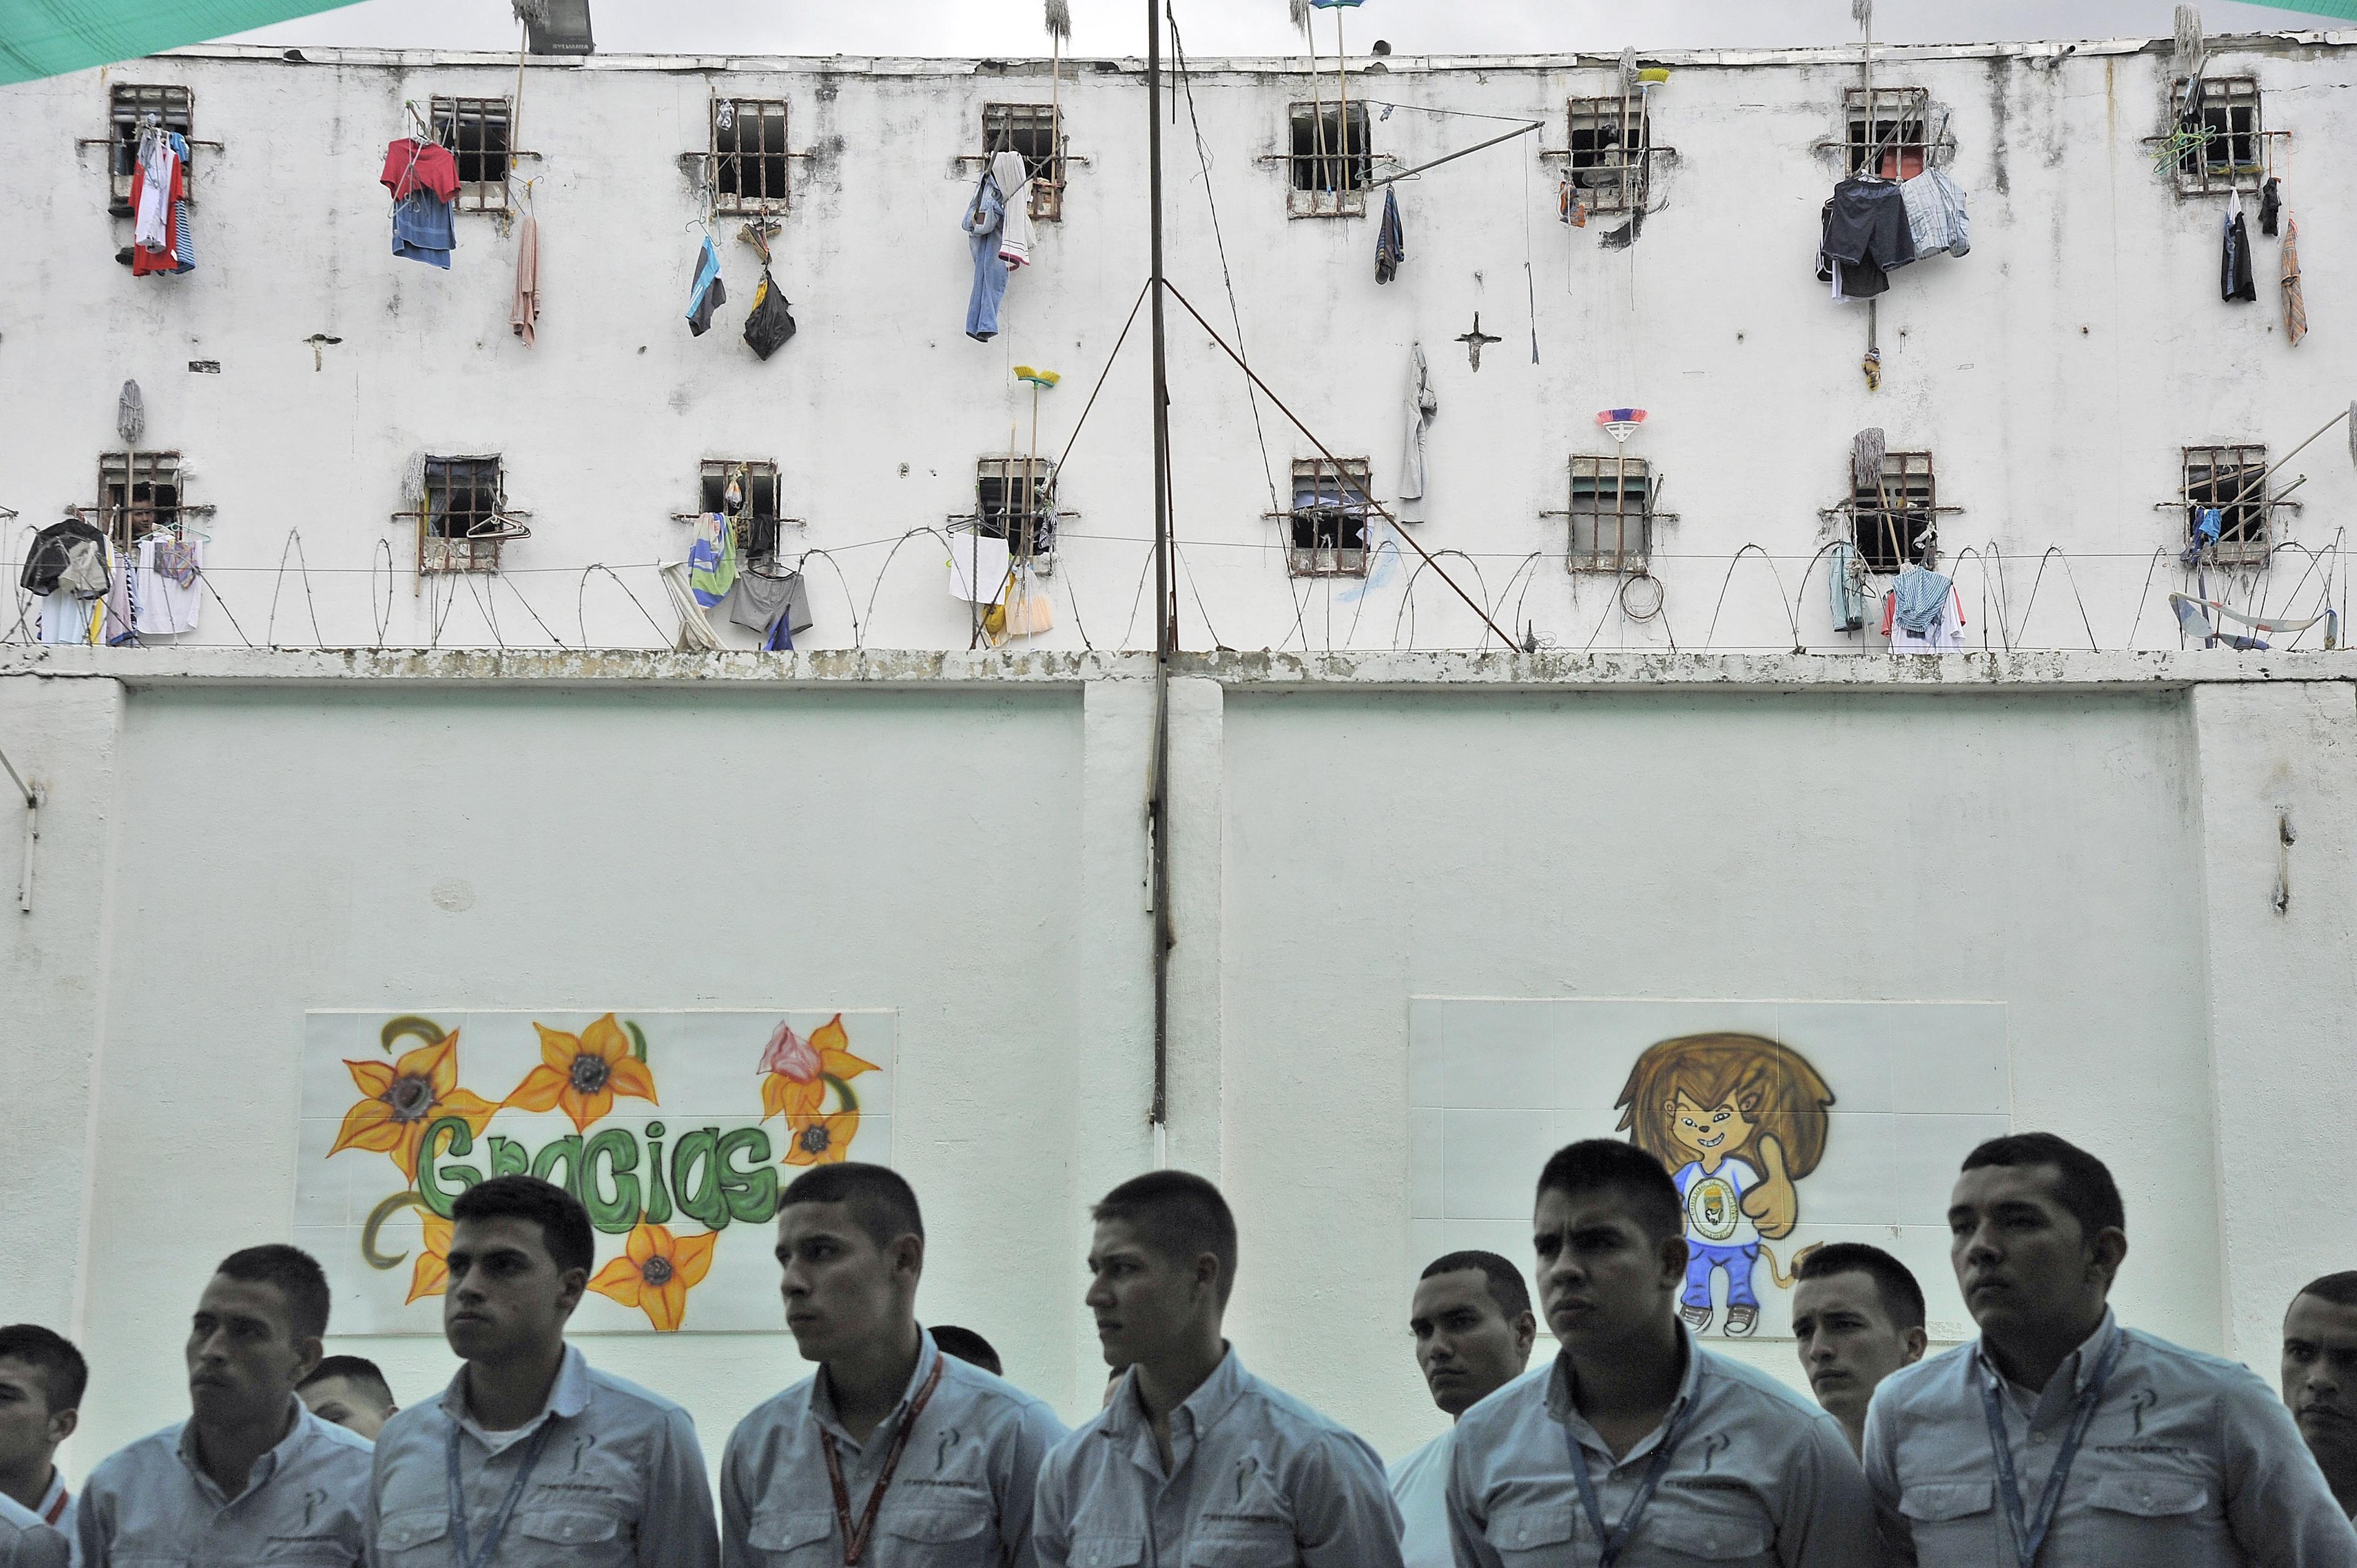 Mandela-reglerna betonar fångars och andra frihetsberövades mänskliga värde. Bilden visar fångar i ett colombianskt fängelse. (Foto: Guillermo Legaria /AFP/Getty Images)